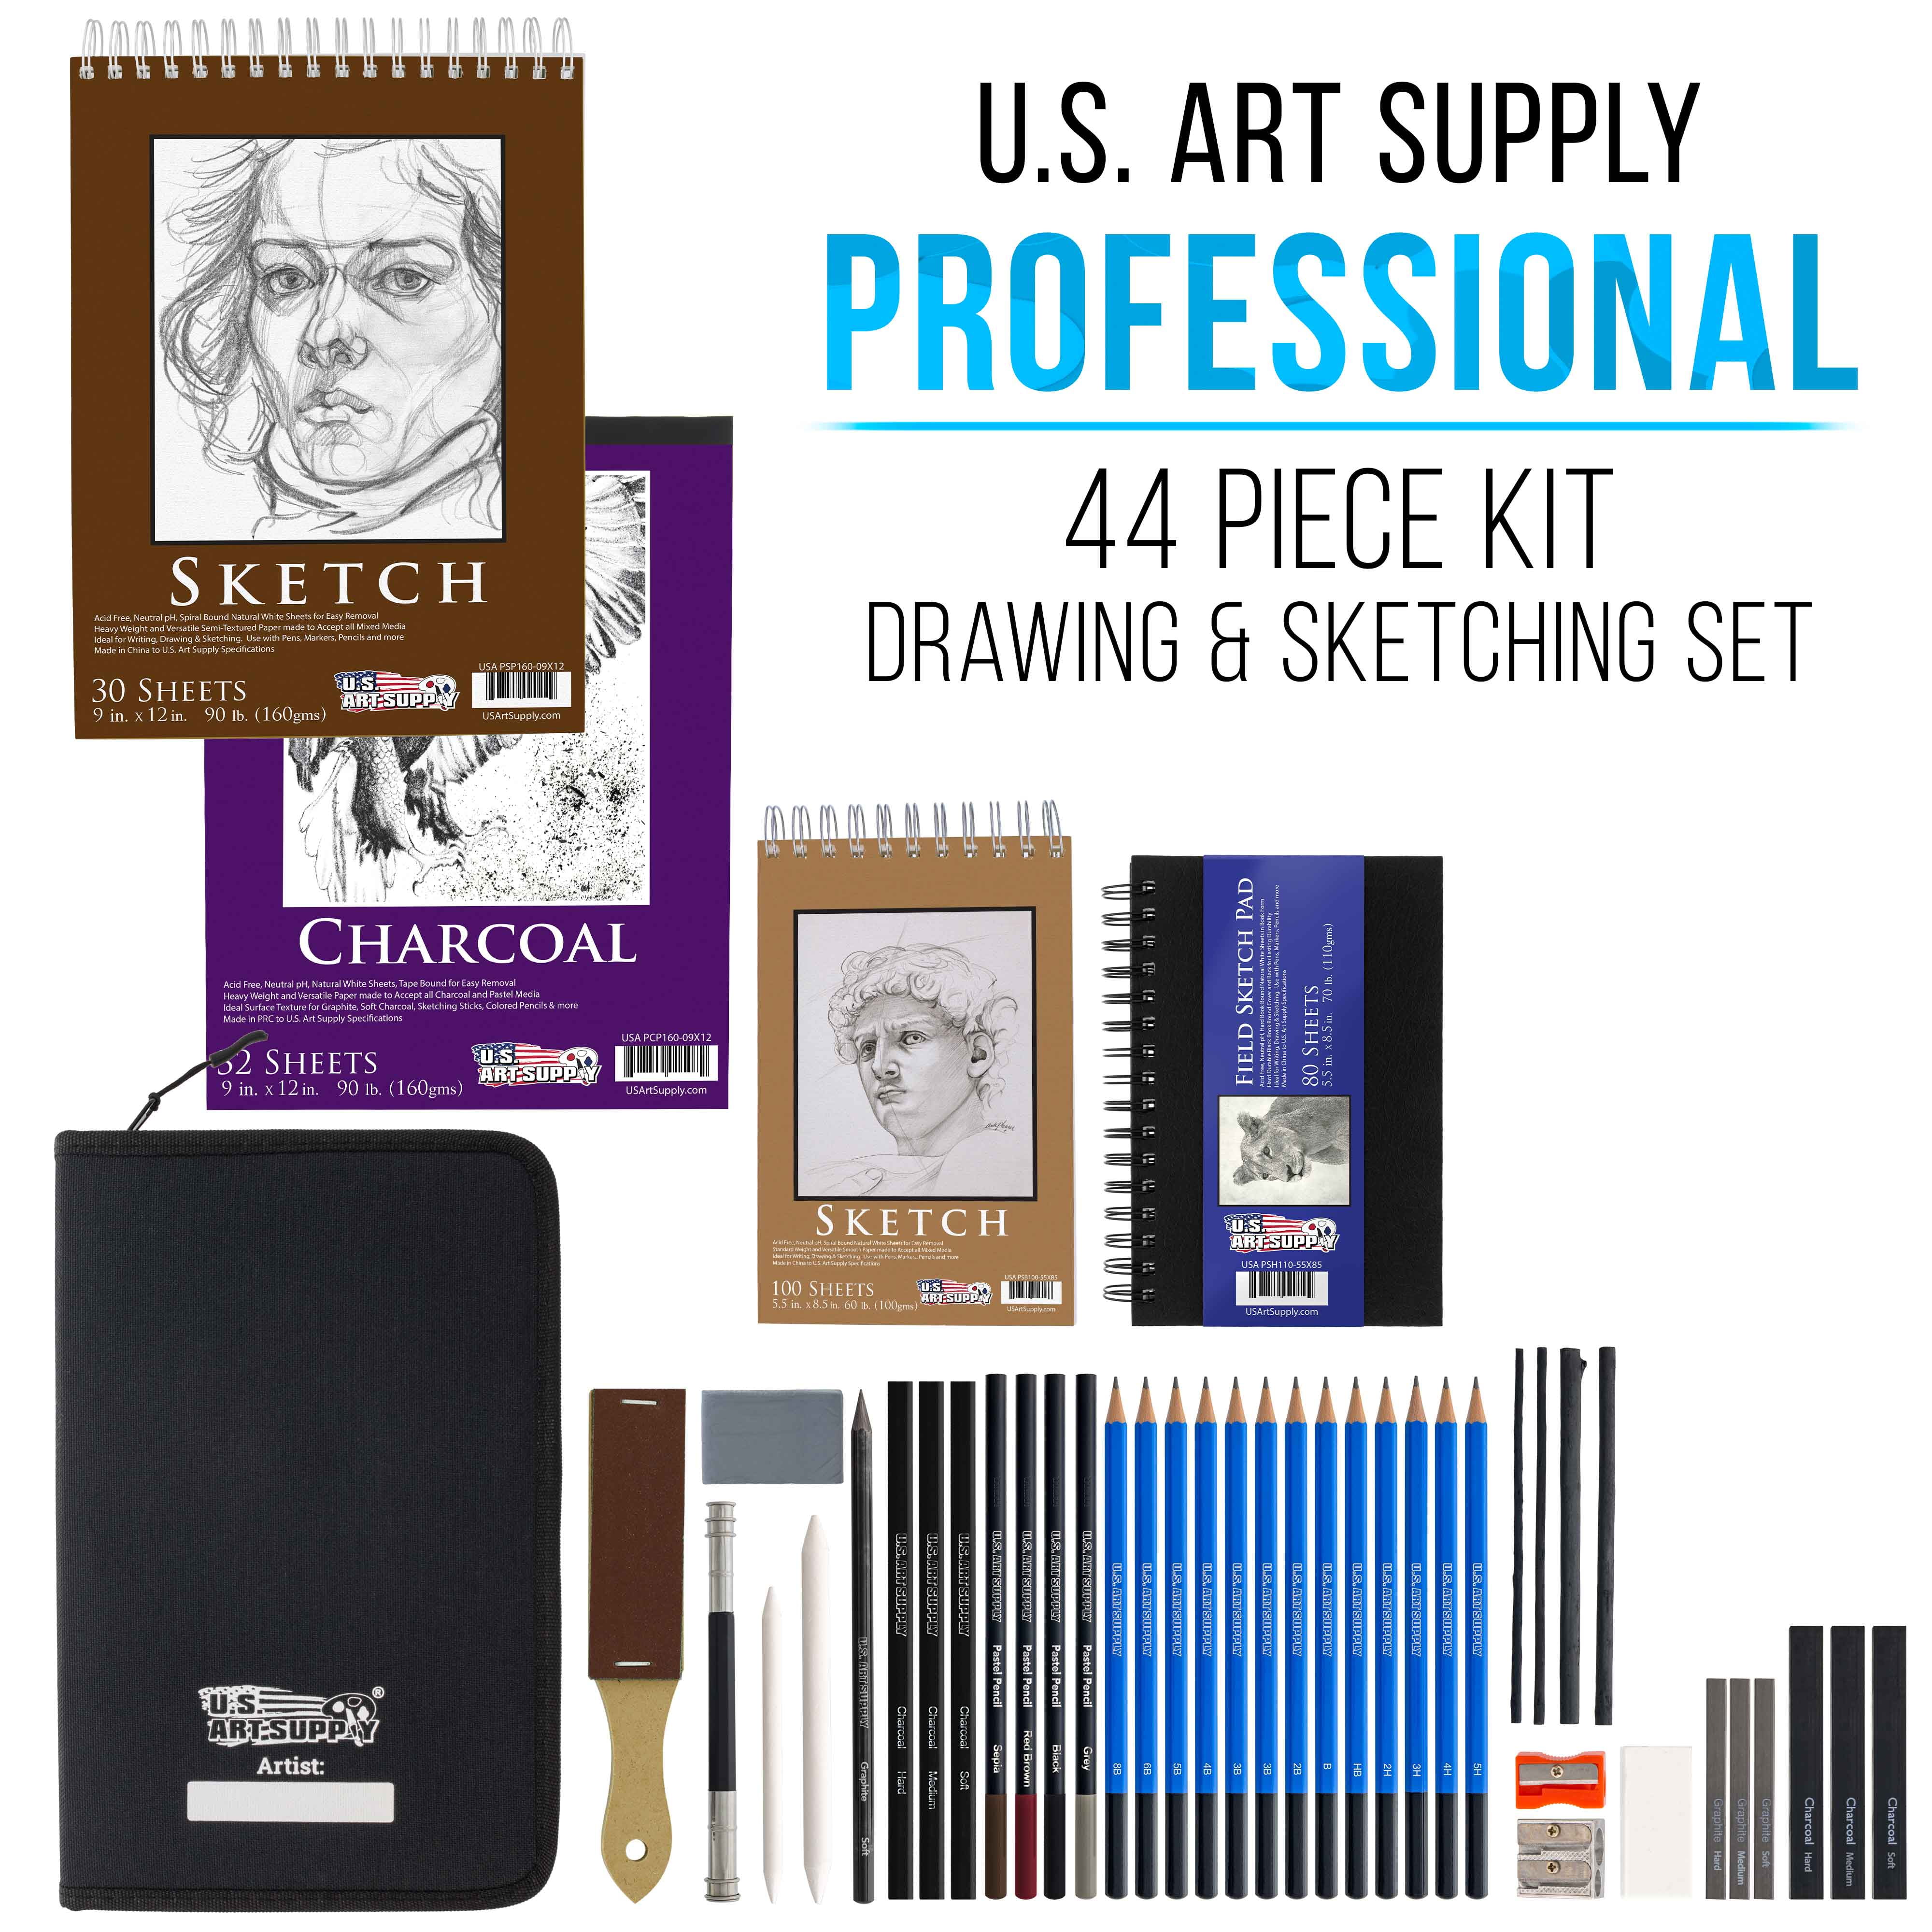 KNAFS 42 Pcs Sketching and Drawing Professional Art